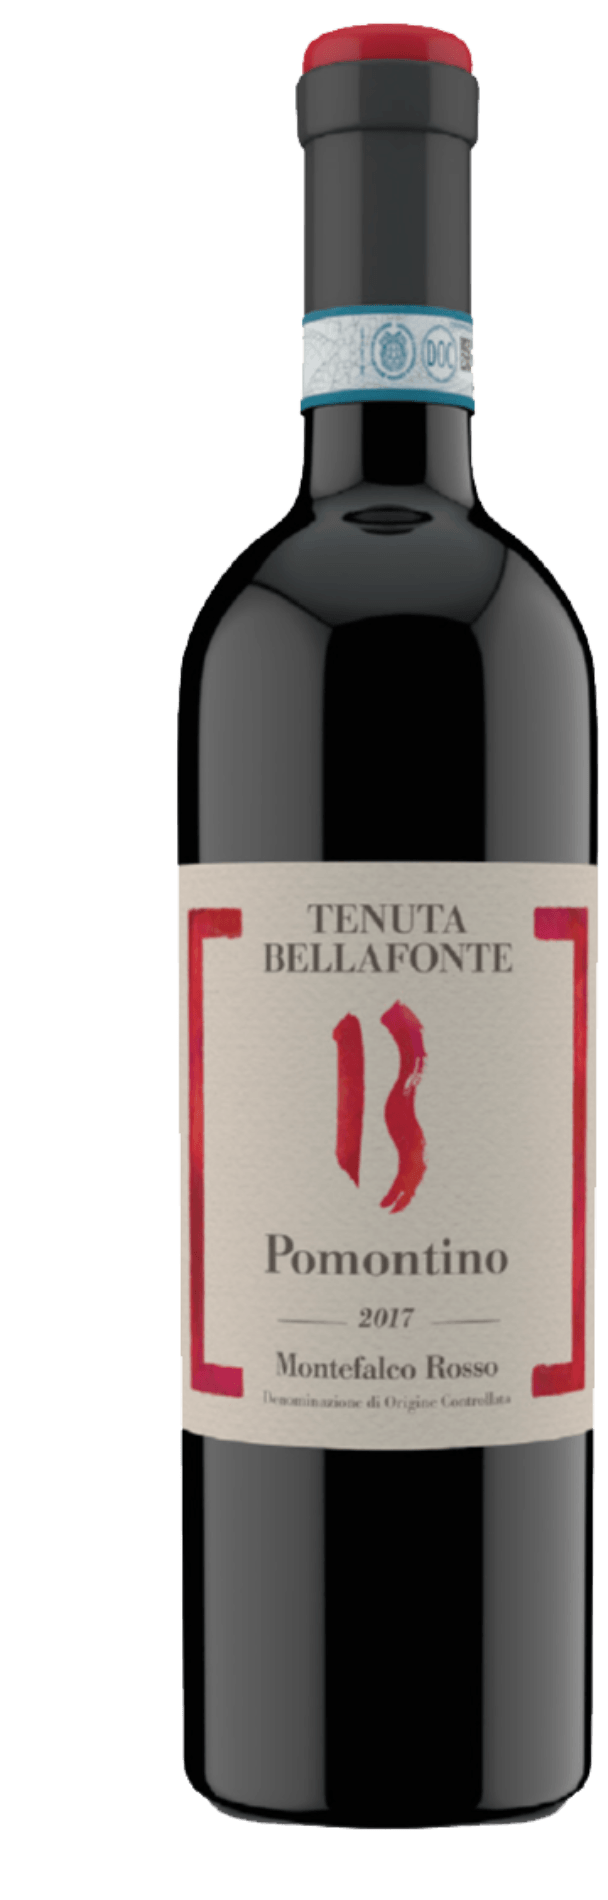 Pomontino 2019 - Tenuta Bellafonte